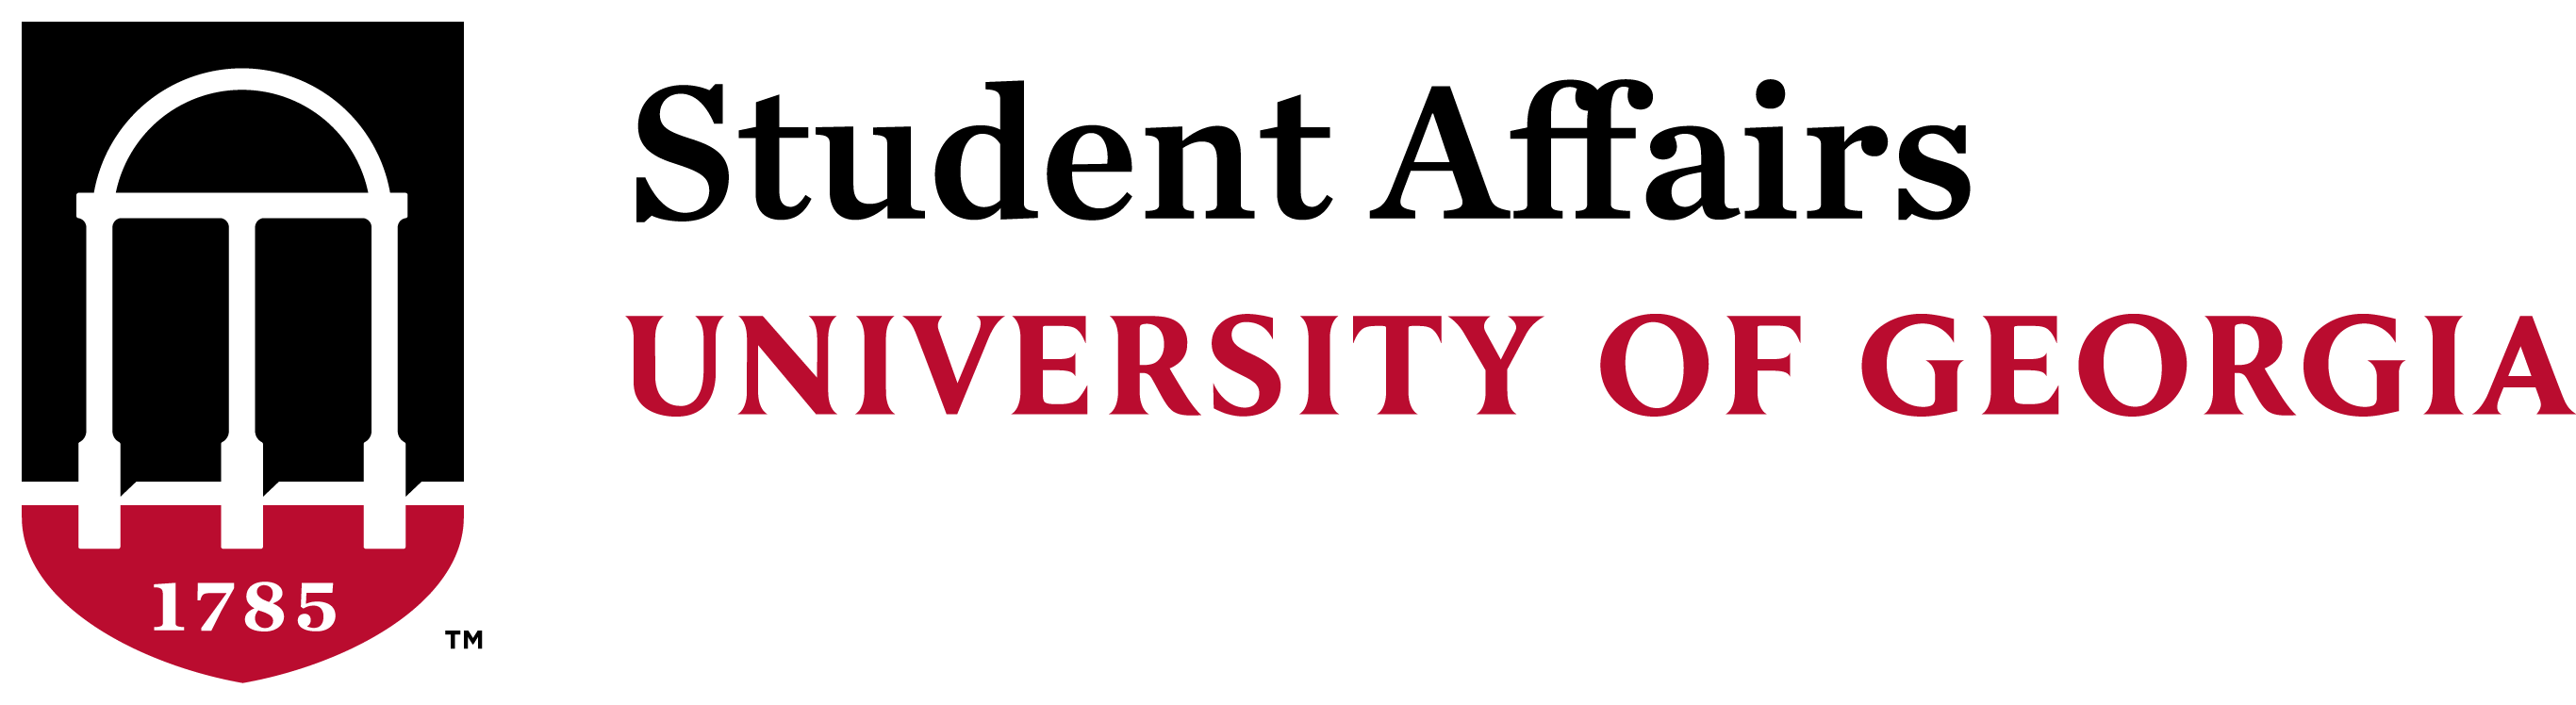 UGA Student Affairs logo.